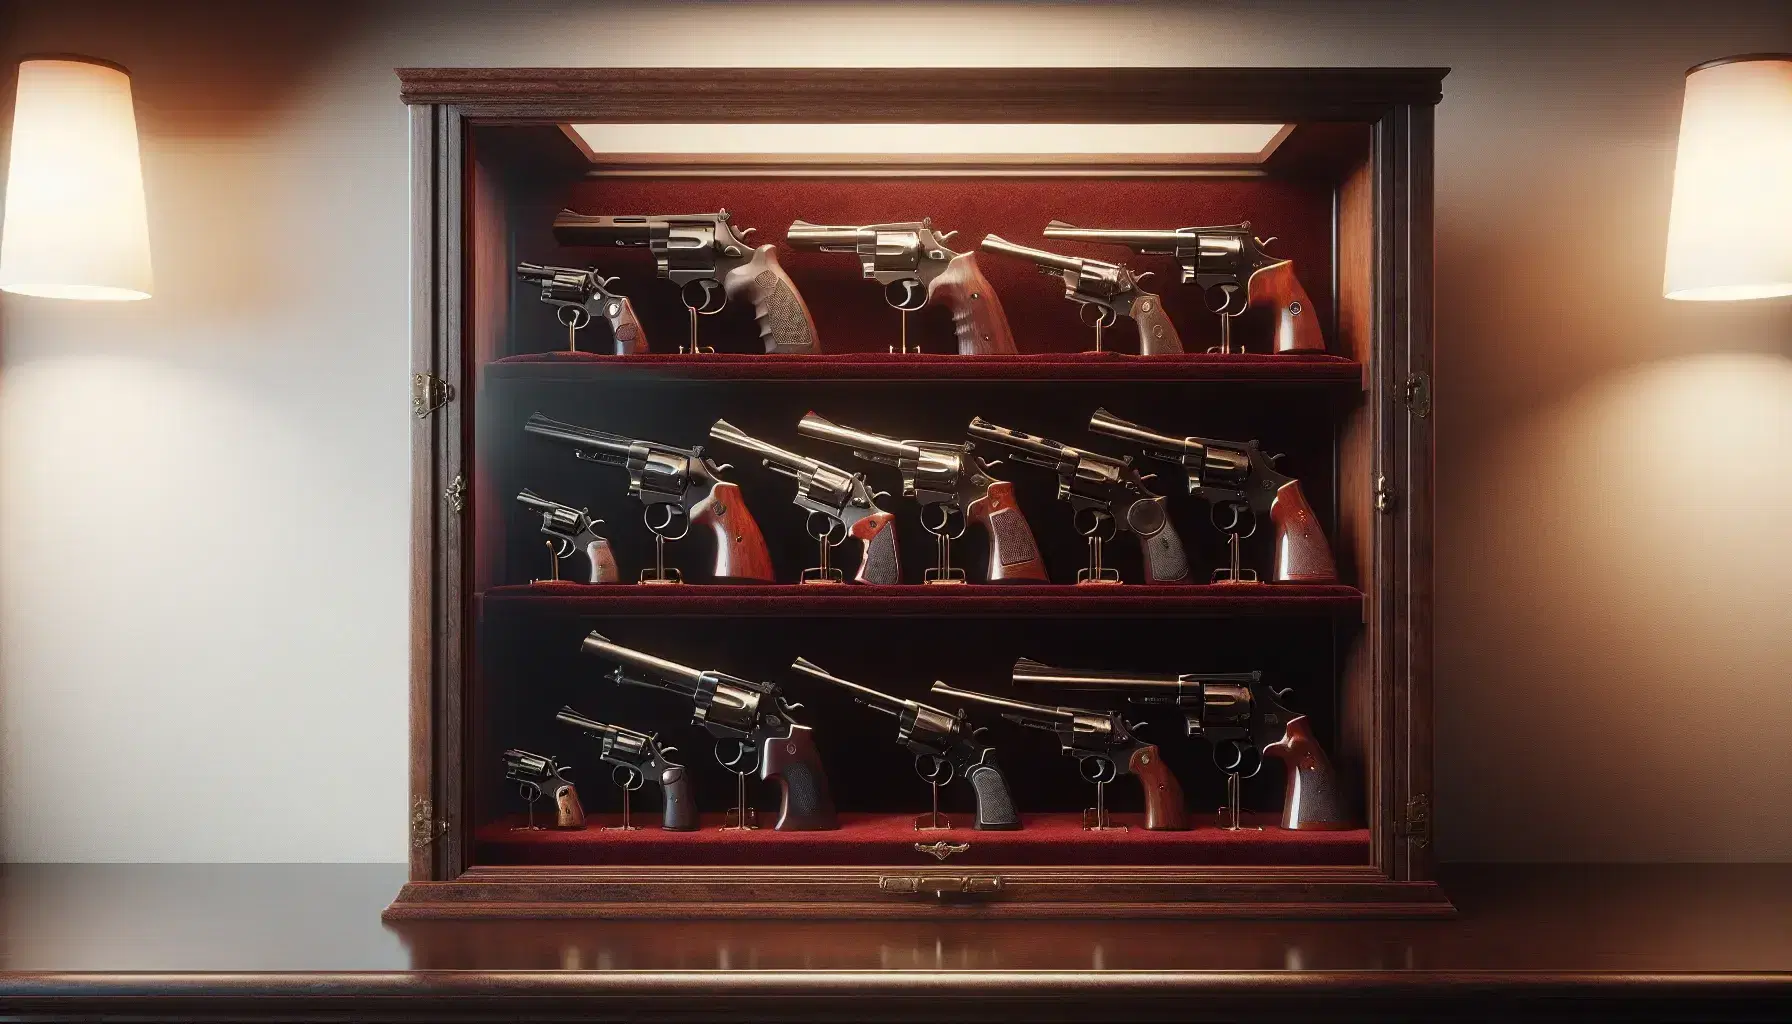 Vitrina de madera con colección de armas de fuego antiguas sobre forro de terciopelo rojo oscuro, incluyendo pistolas y revólveres con empuñaduras de madera y material negro.